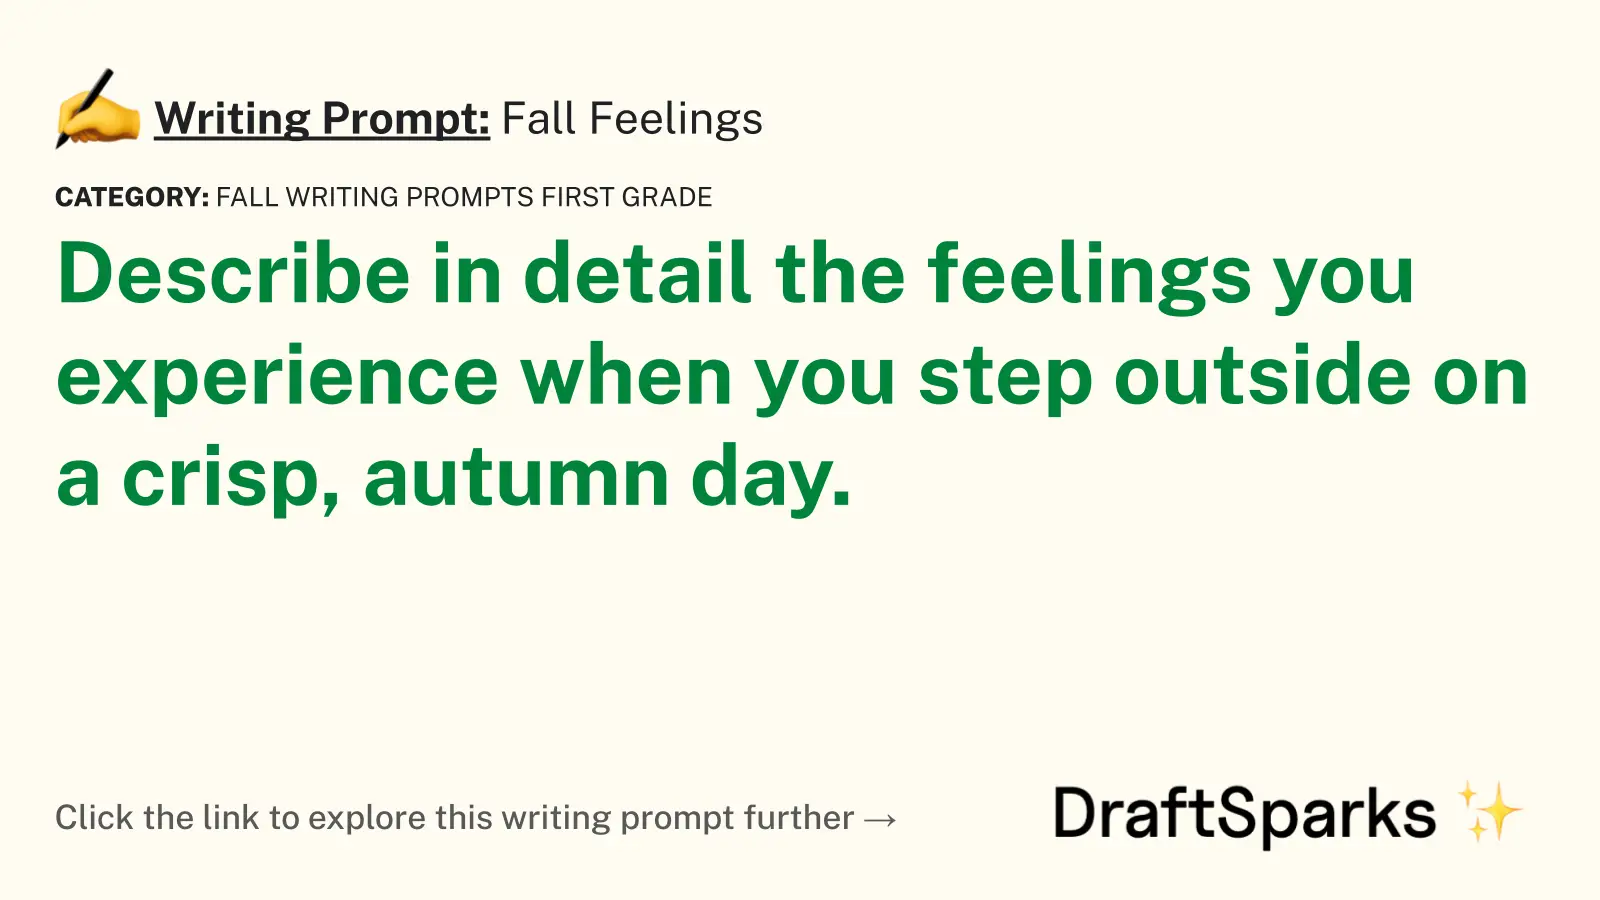 Fall Feelings